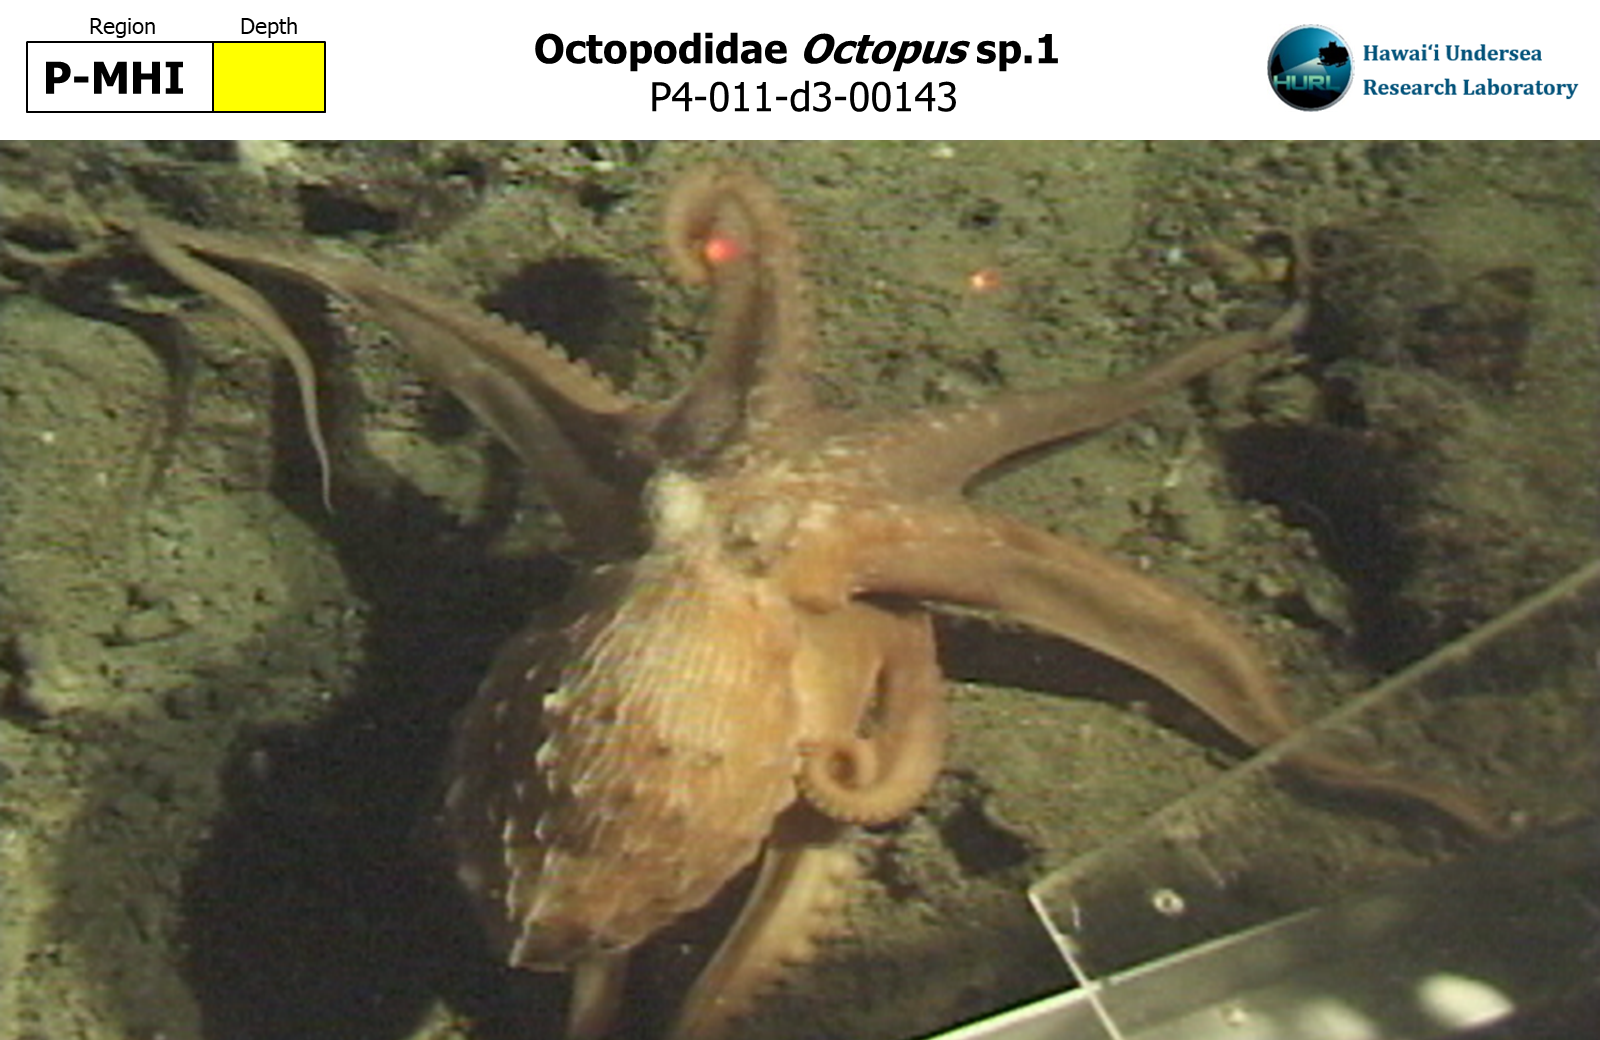 Octopus sp.1